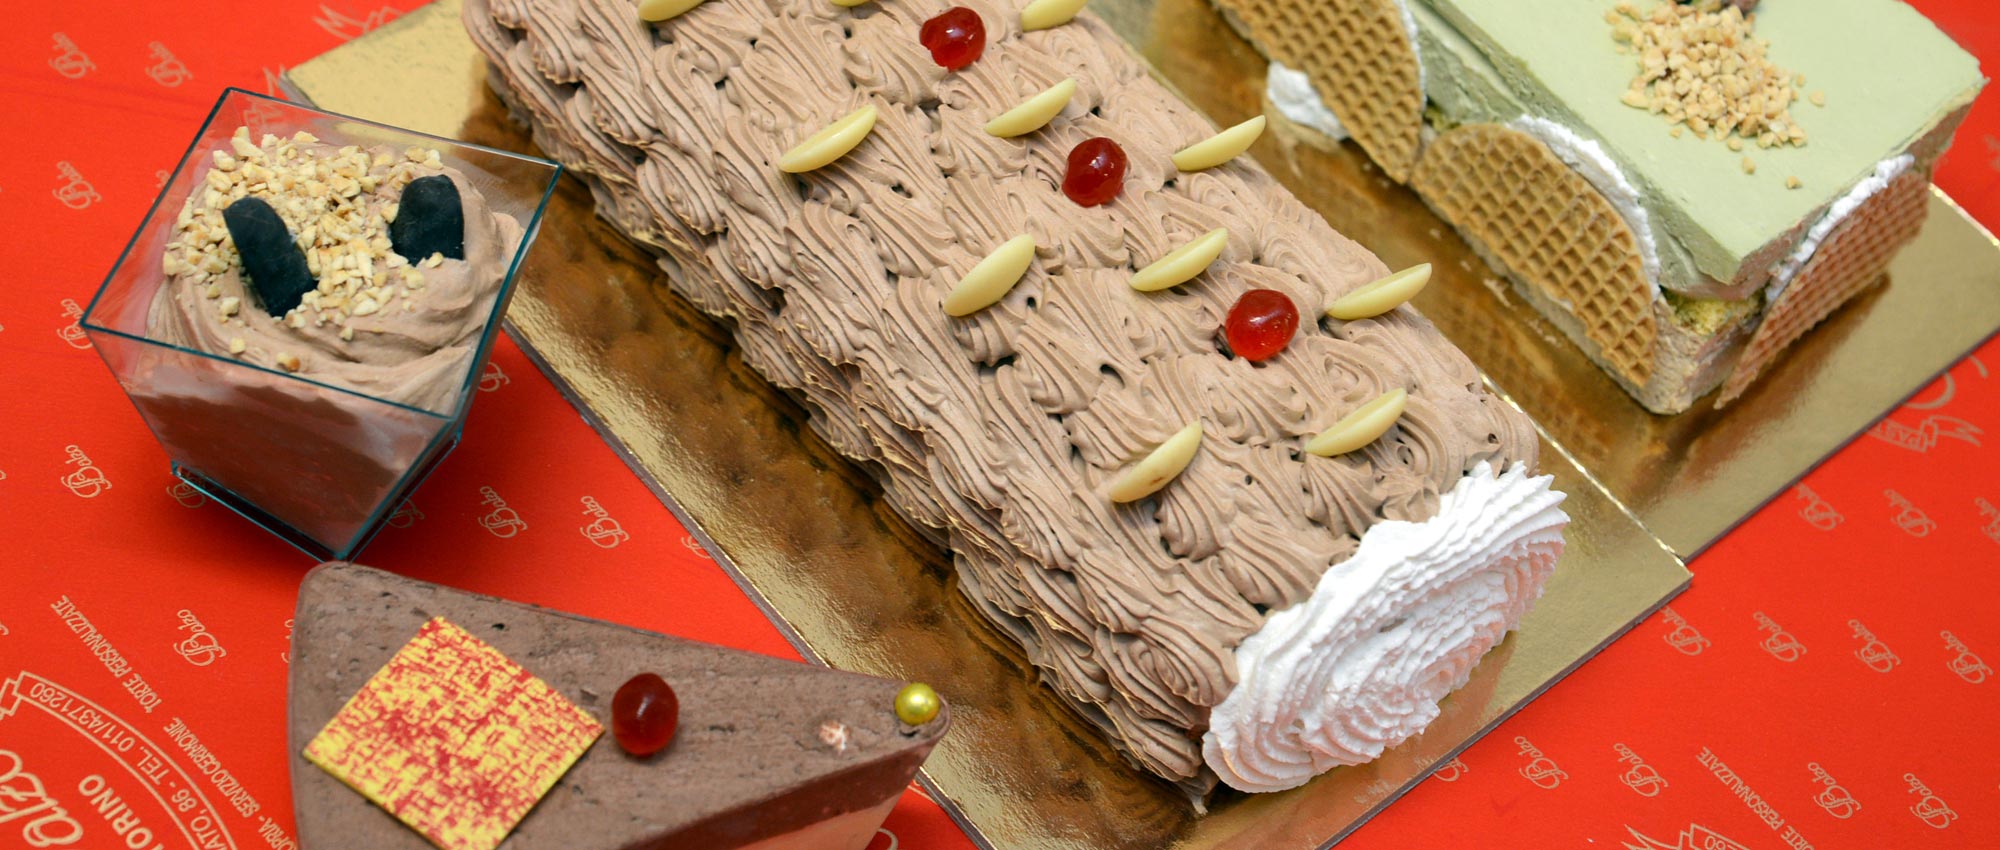 Pasticcini, paste fresche, paste secche, torte di compleanno, Pasticceria Balzo - Torino